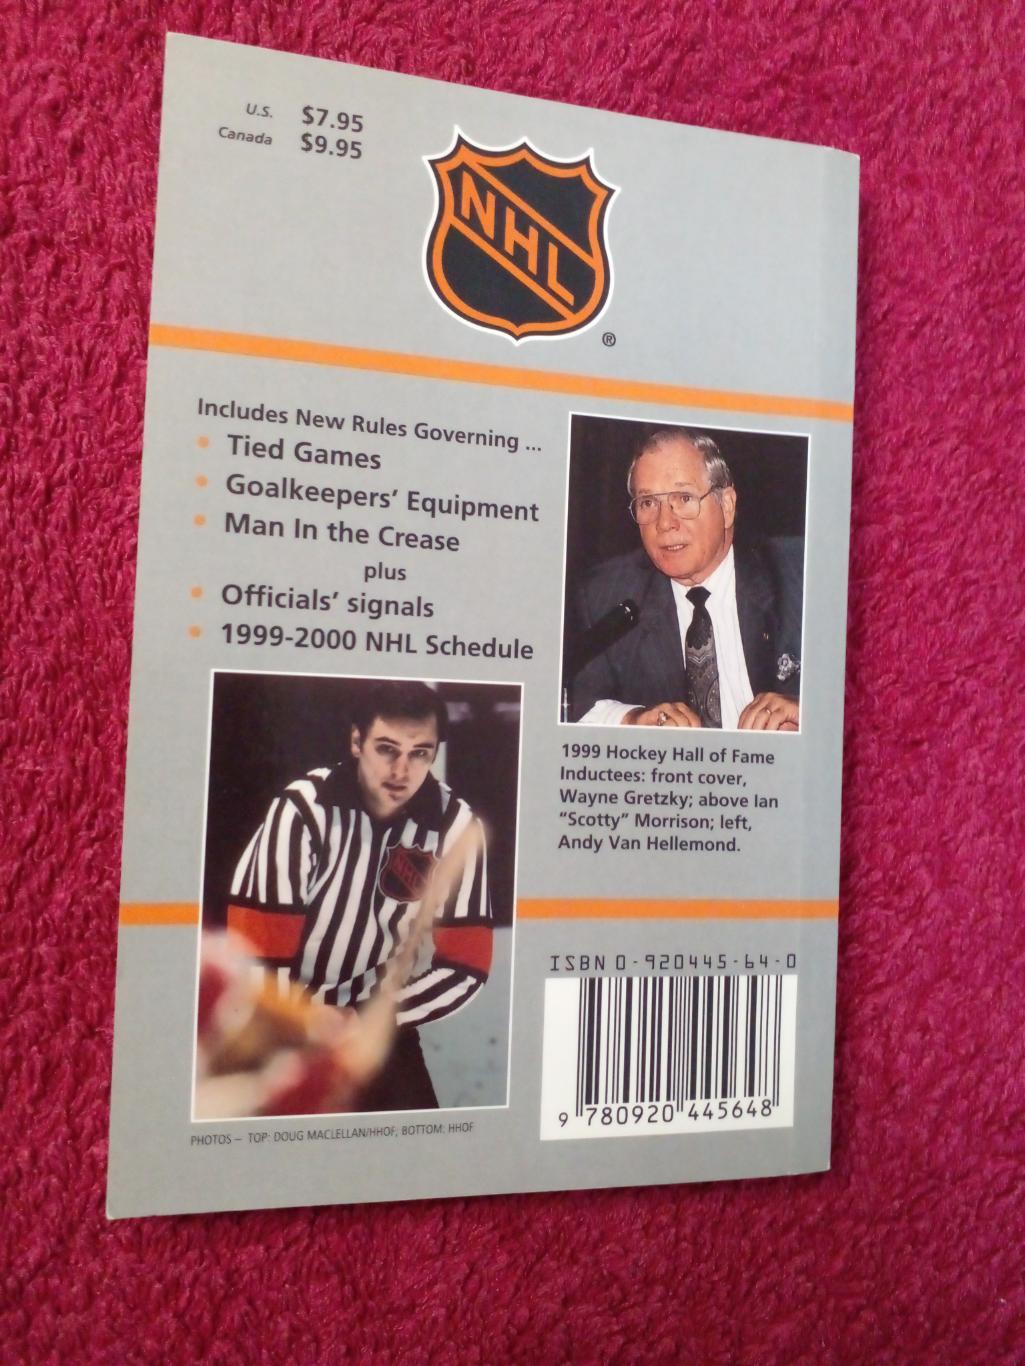 Справочник Хоккей НХЛ OFFICIAL RULES 1999-2000. Обложка - Уэйн Гретцки 1